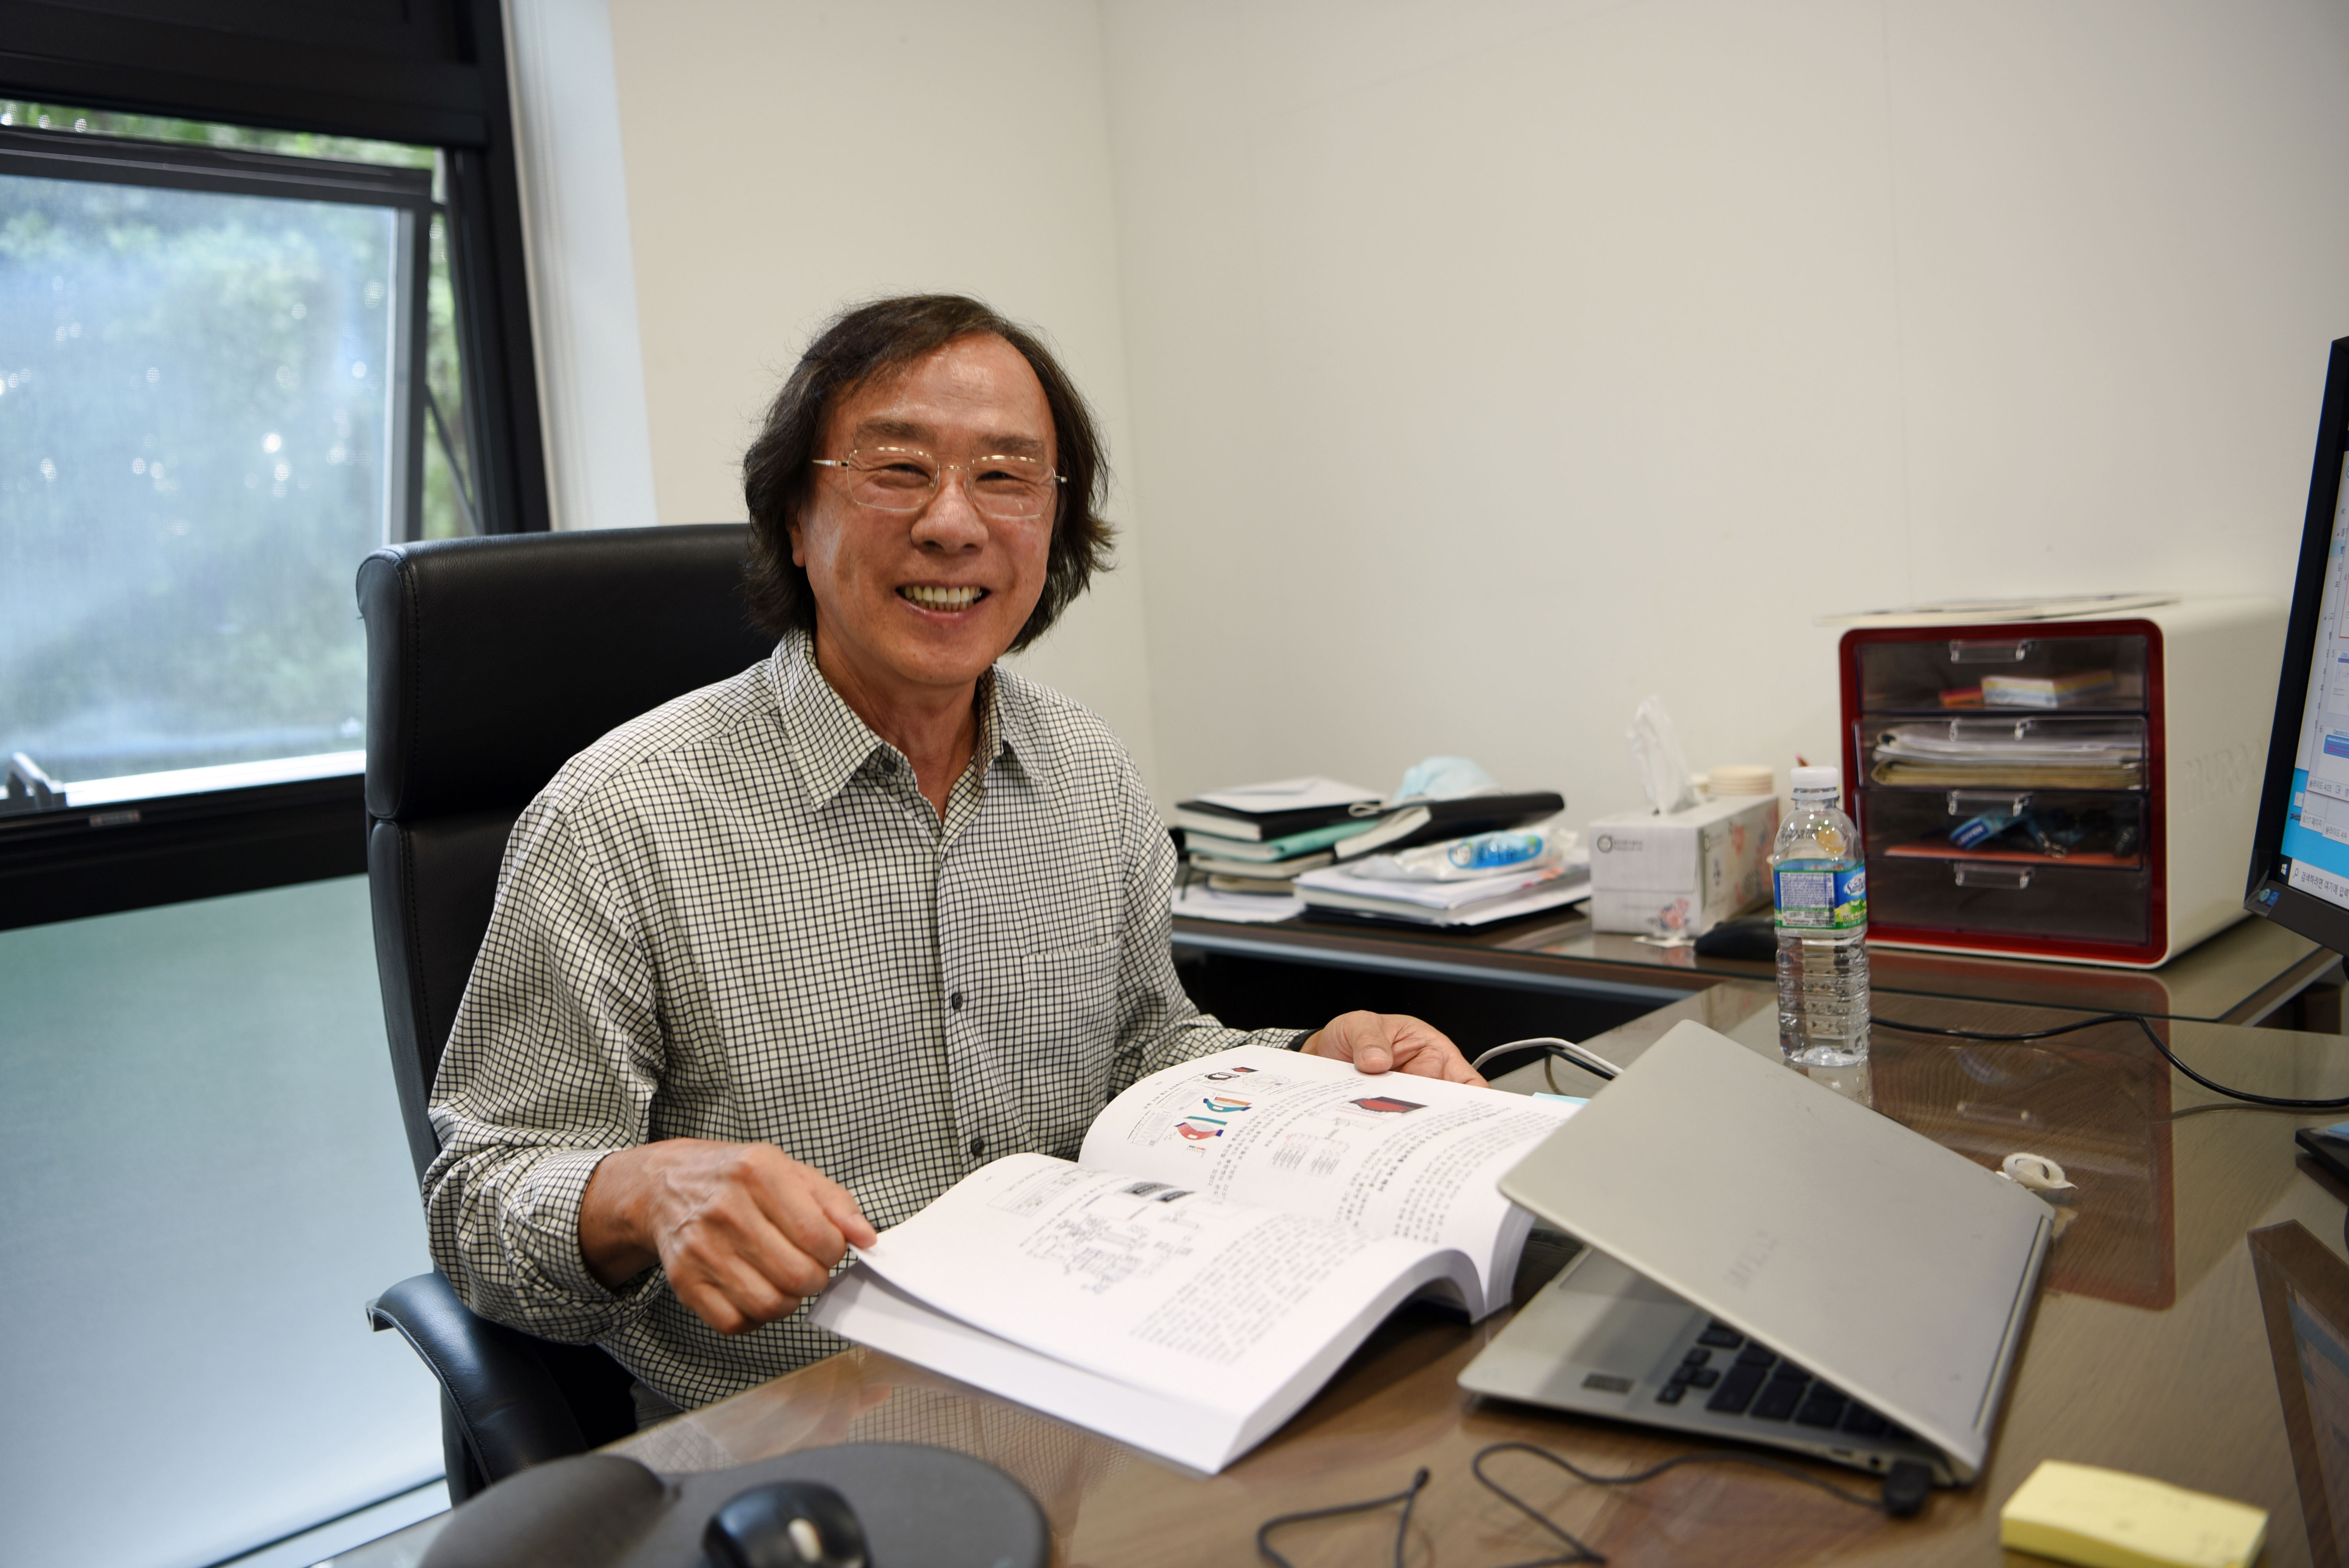 2020년 찬드라세카 상의 수상자로 선정된 박현거 교수 | 사진: 국가핵융합연구소 제공